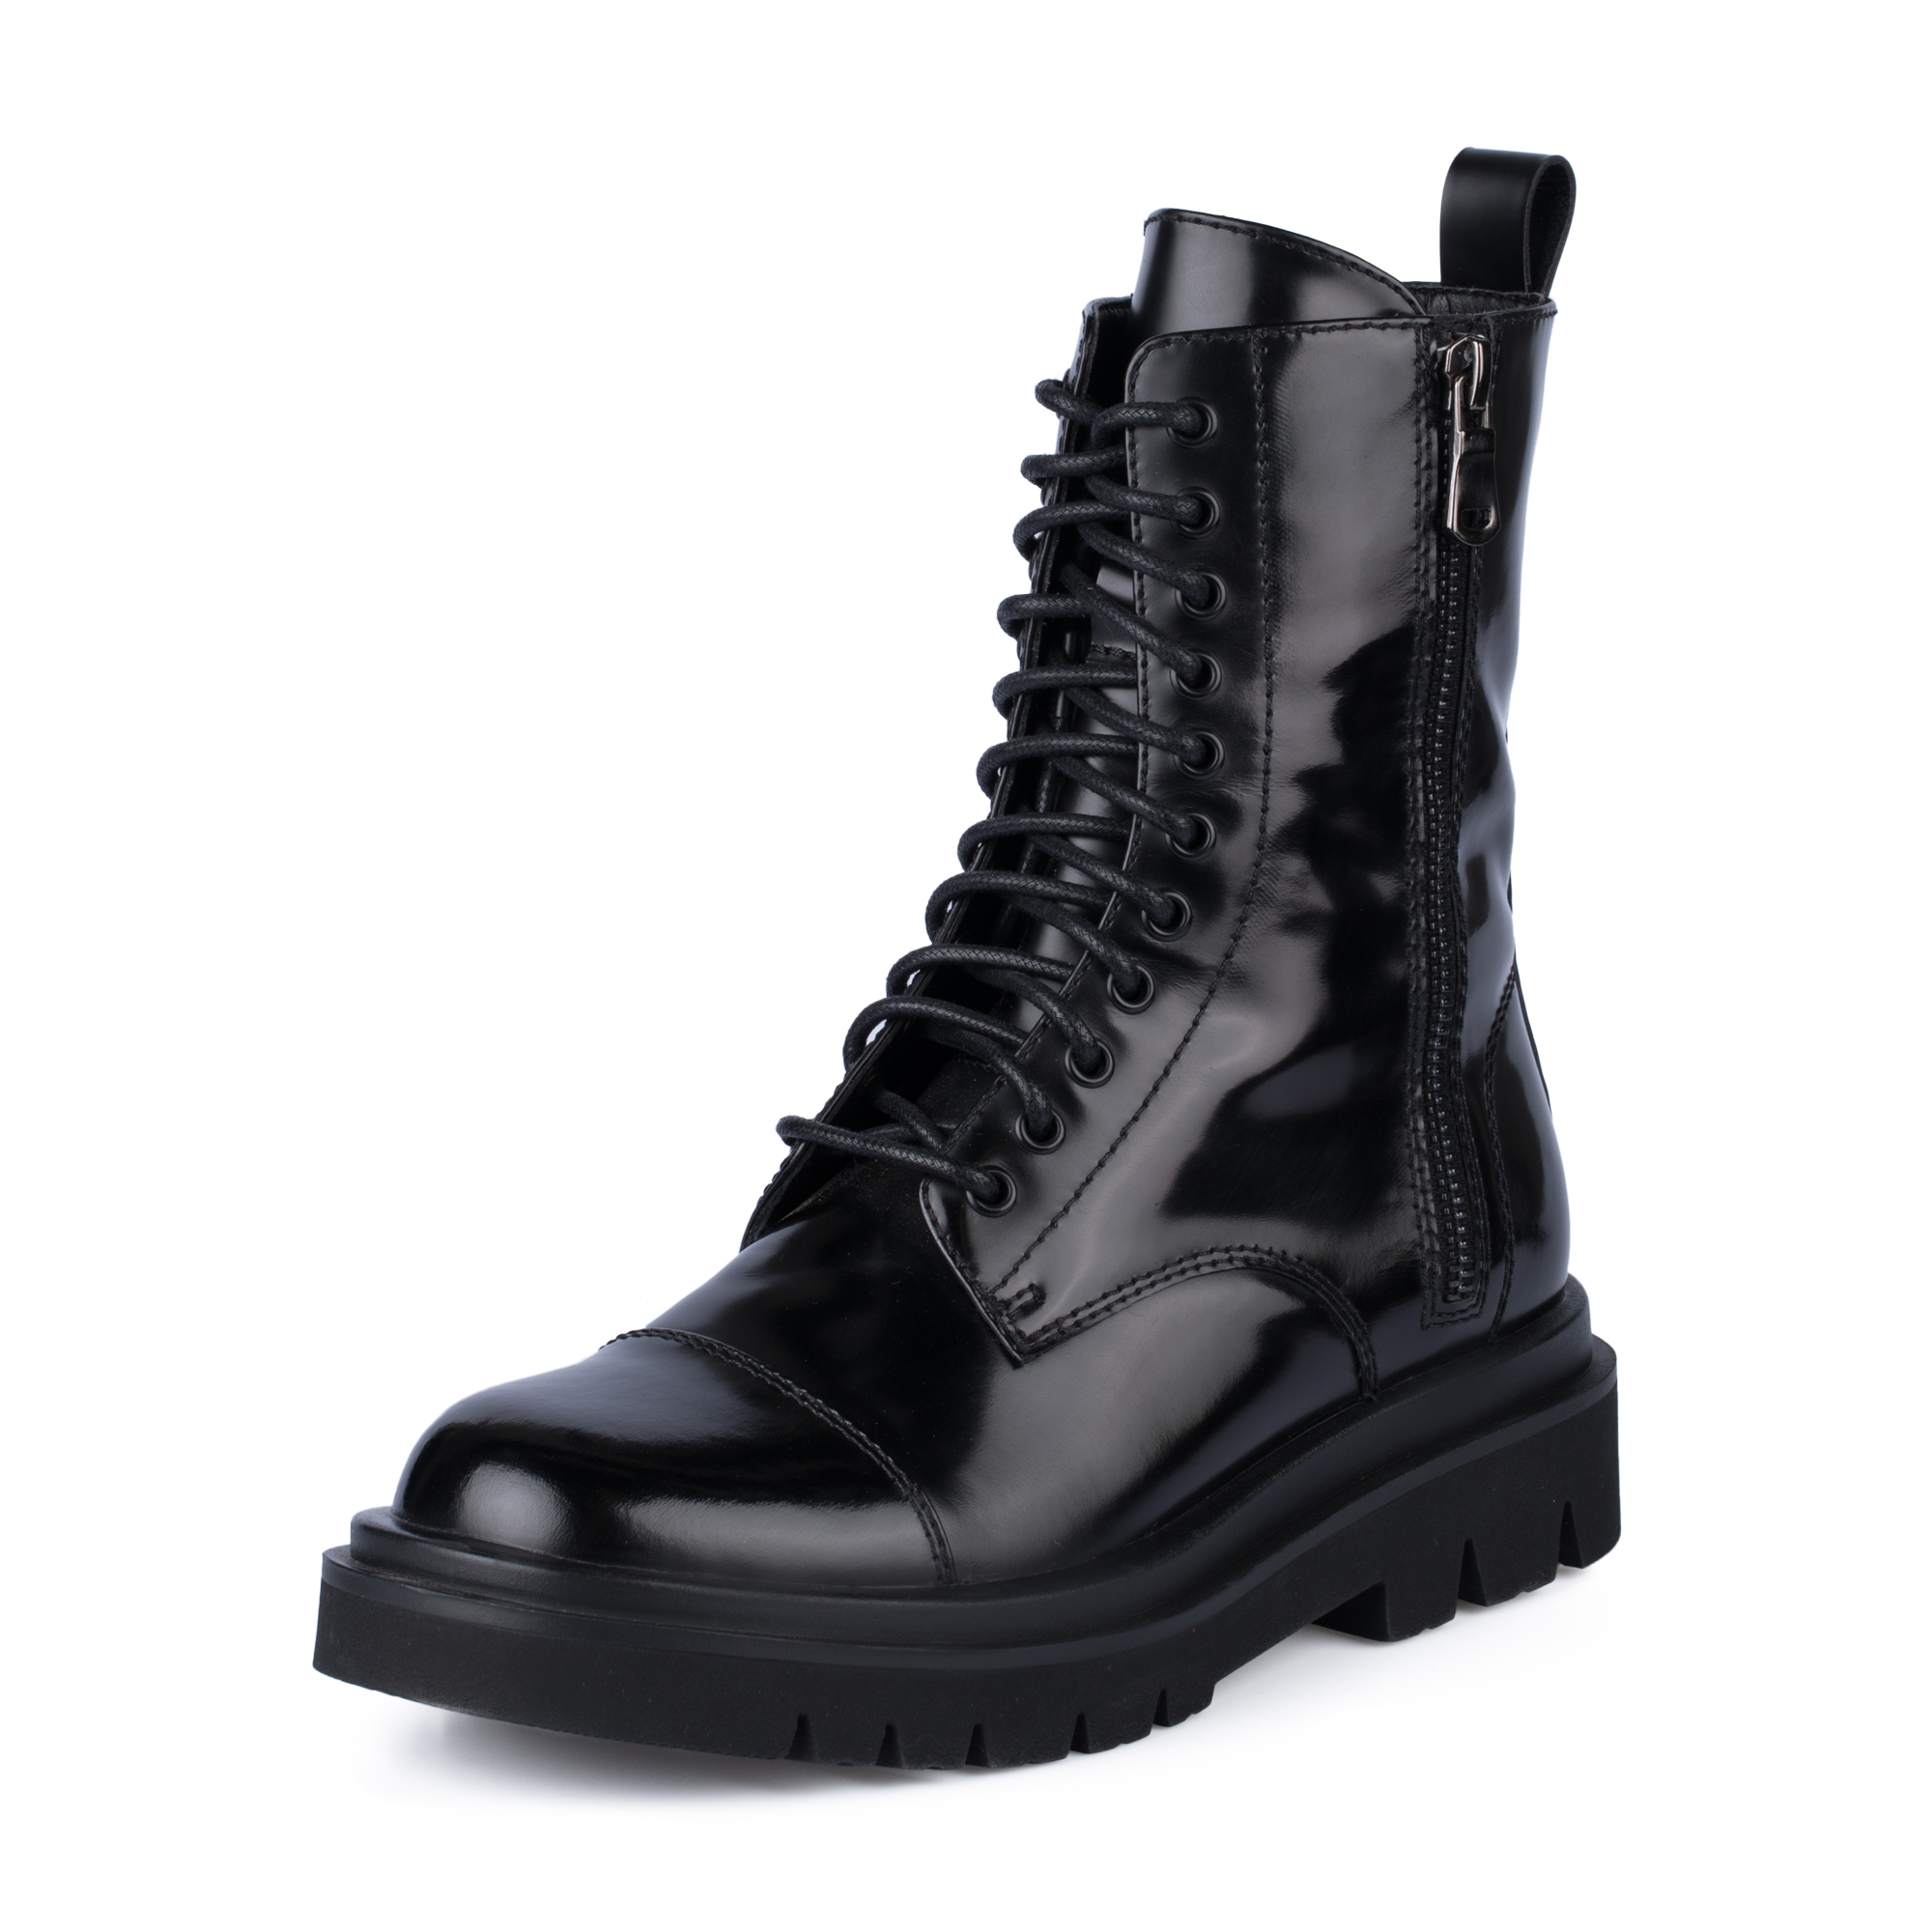 Ботинки Thomas Munz 233-895A-2602, цвет черный, размер 40 - фото 2